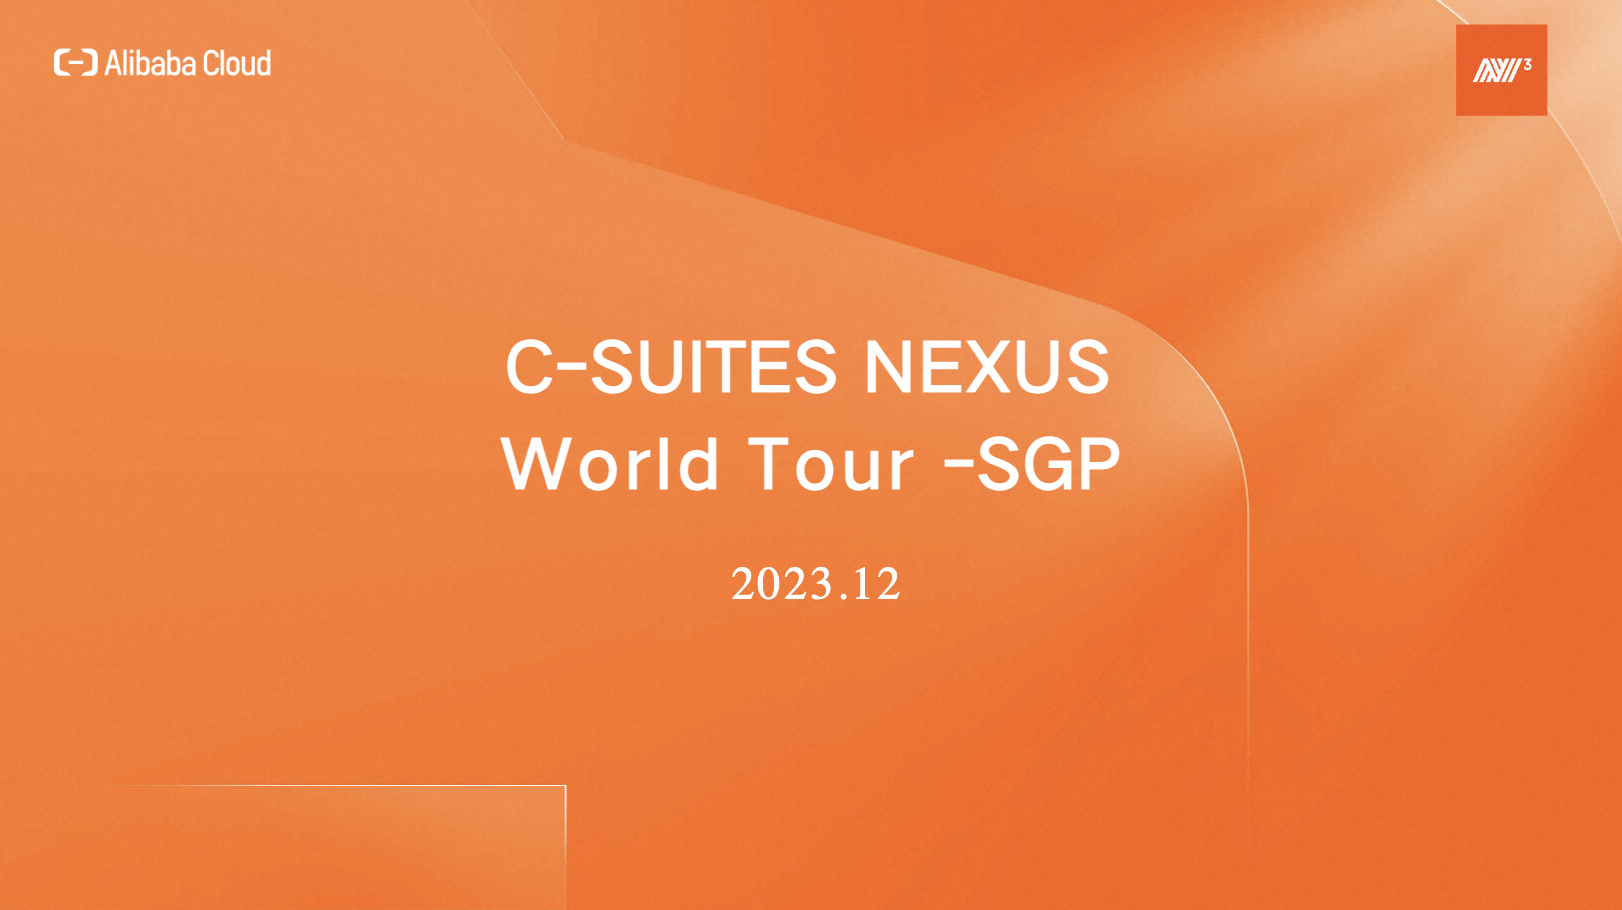 C-SUITES NEXUS World Tour - Singapore